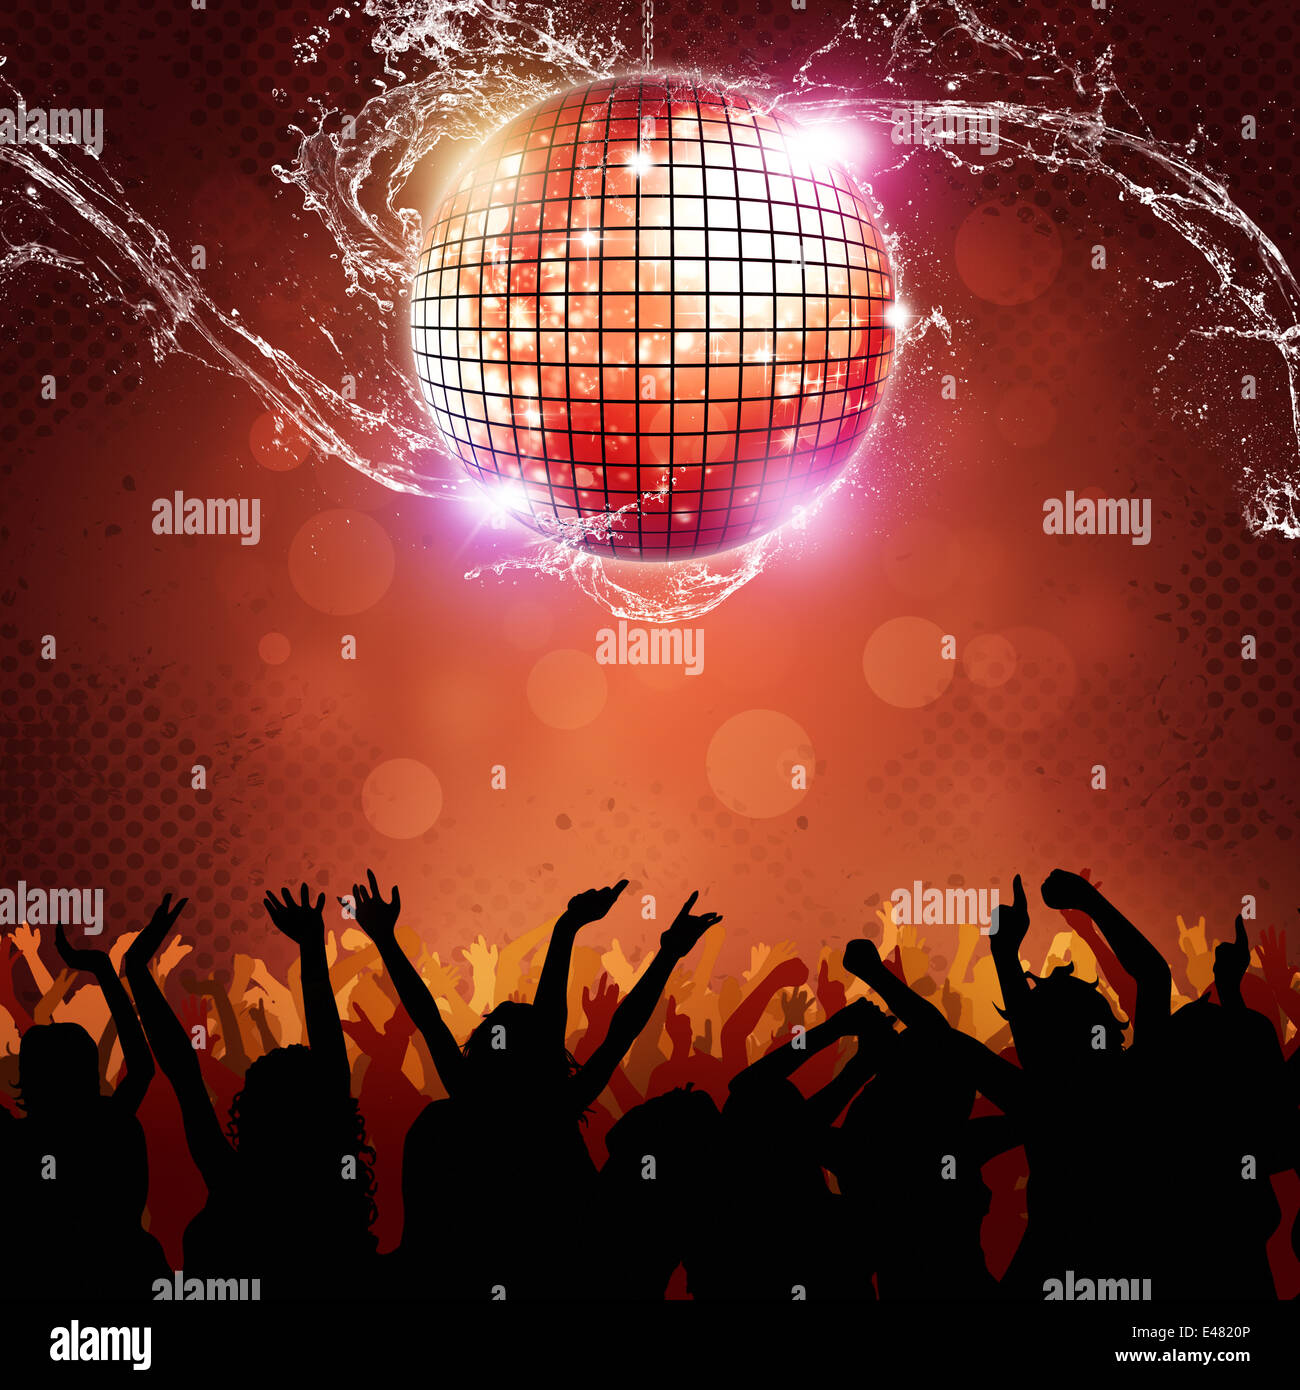 Disco-Kugel und die Menschen tanzen auf der Tanzfläche Stockfotografie -  Alamy